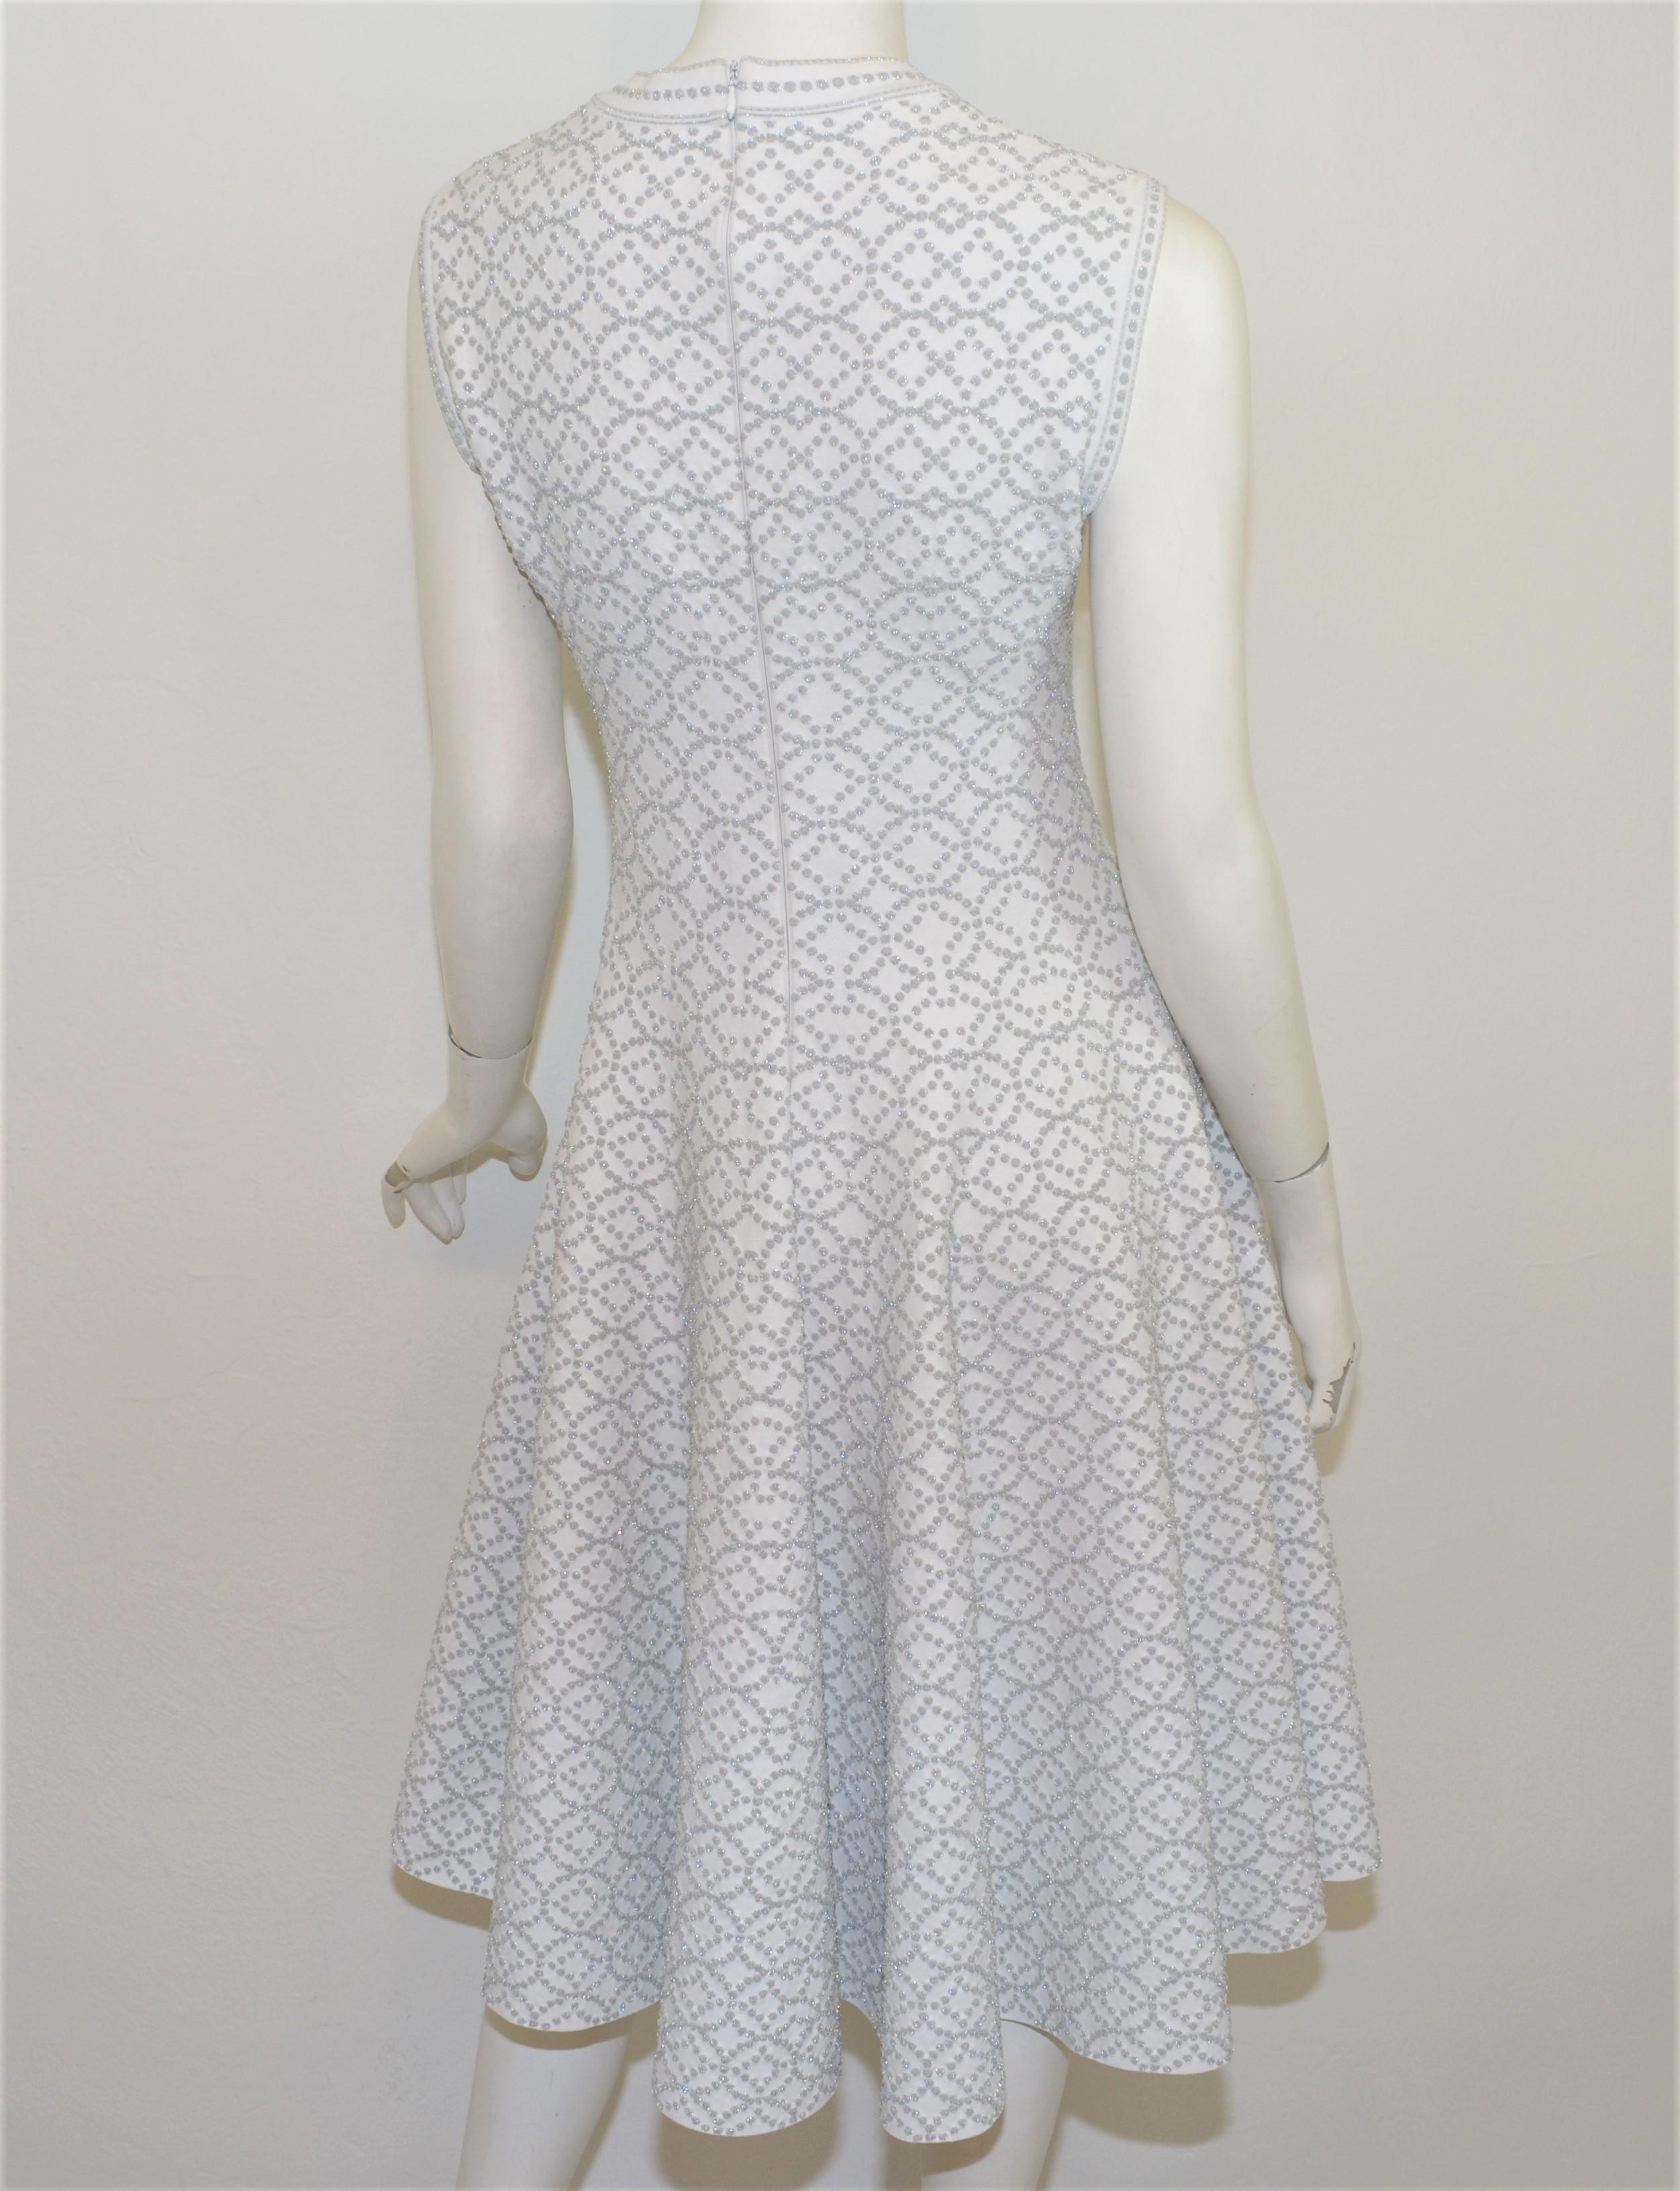 Robe évasée Alaia, blanche avec des fils métalliques argentés sur l'ensemble de la robe, de coupe évasée. Le Label a une fermeture à glissière au dos et est étiqueté taille 42. Fabriquées en Italie.

Mesures :
Buste 32